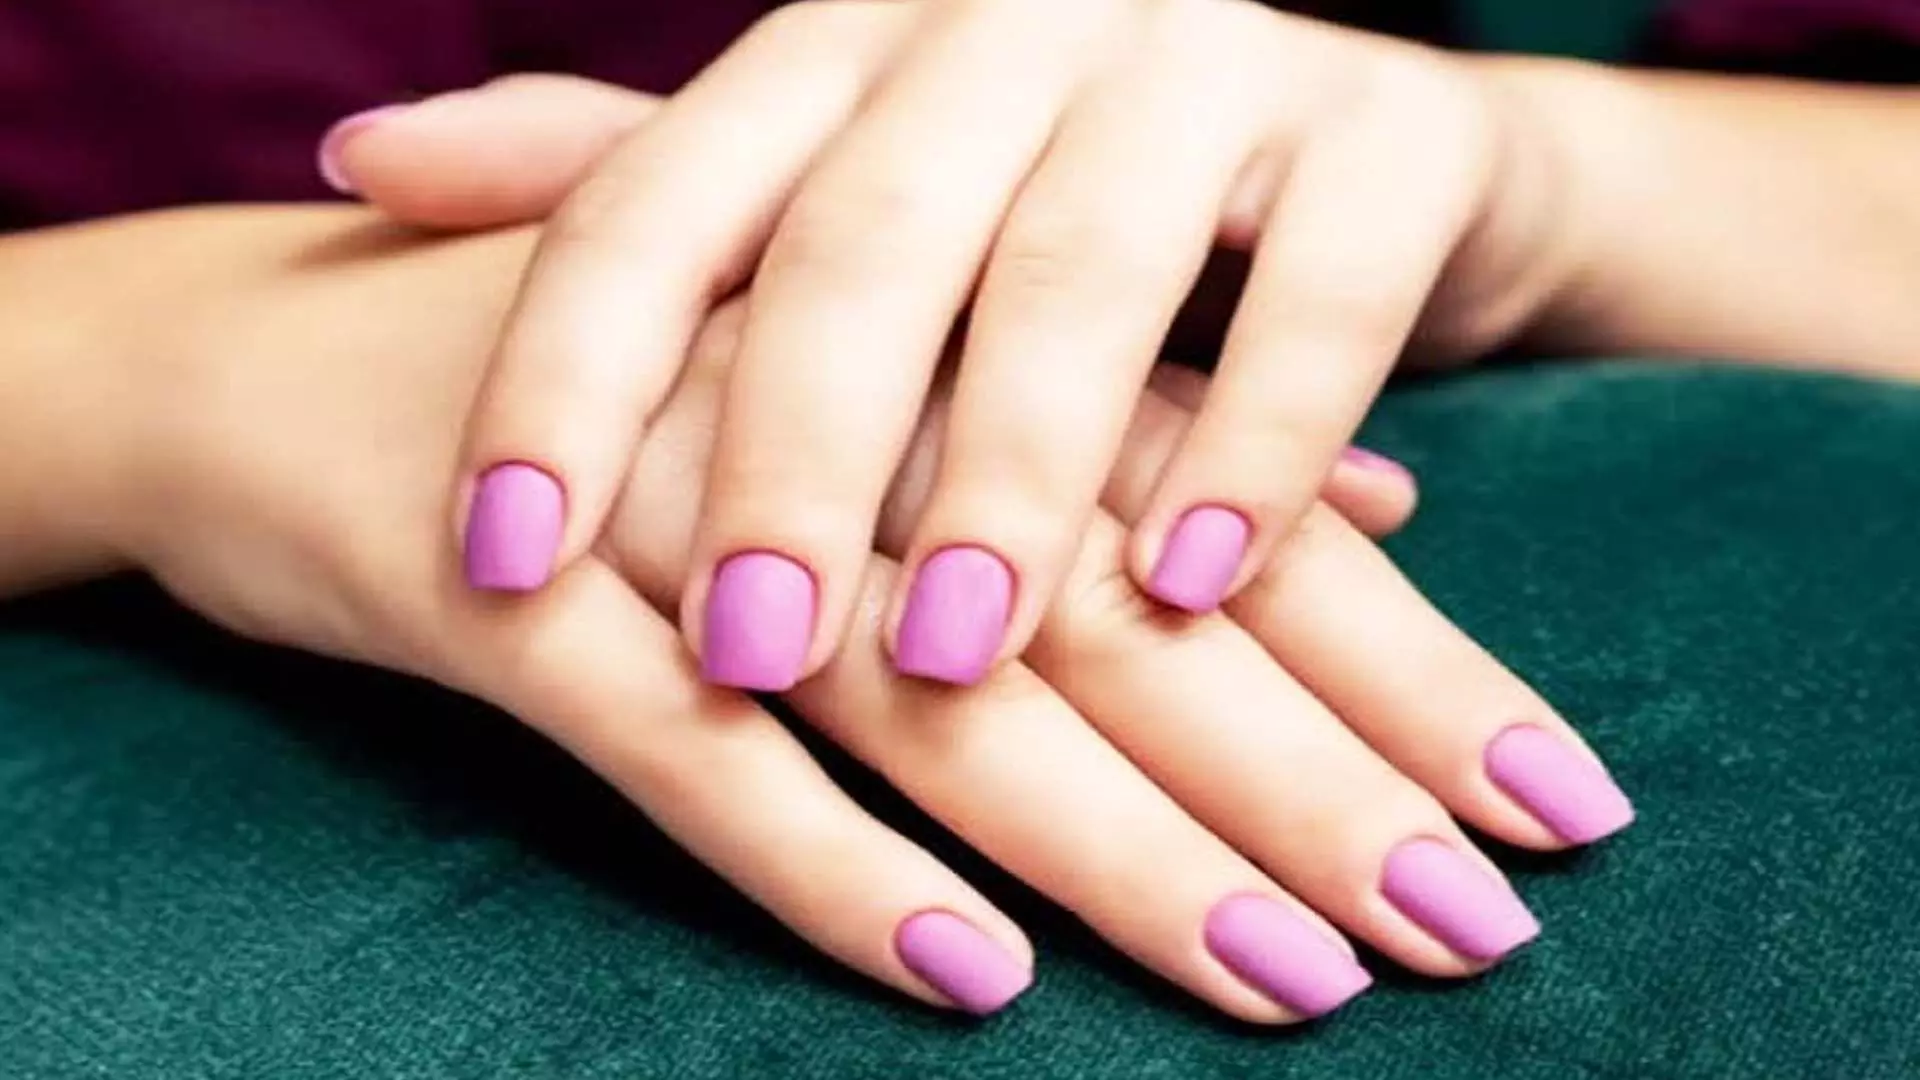 nails shiny: नाखूनों को मजबूत और चमकदार बनाने के लिए आजमाए ये 7 तरीके